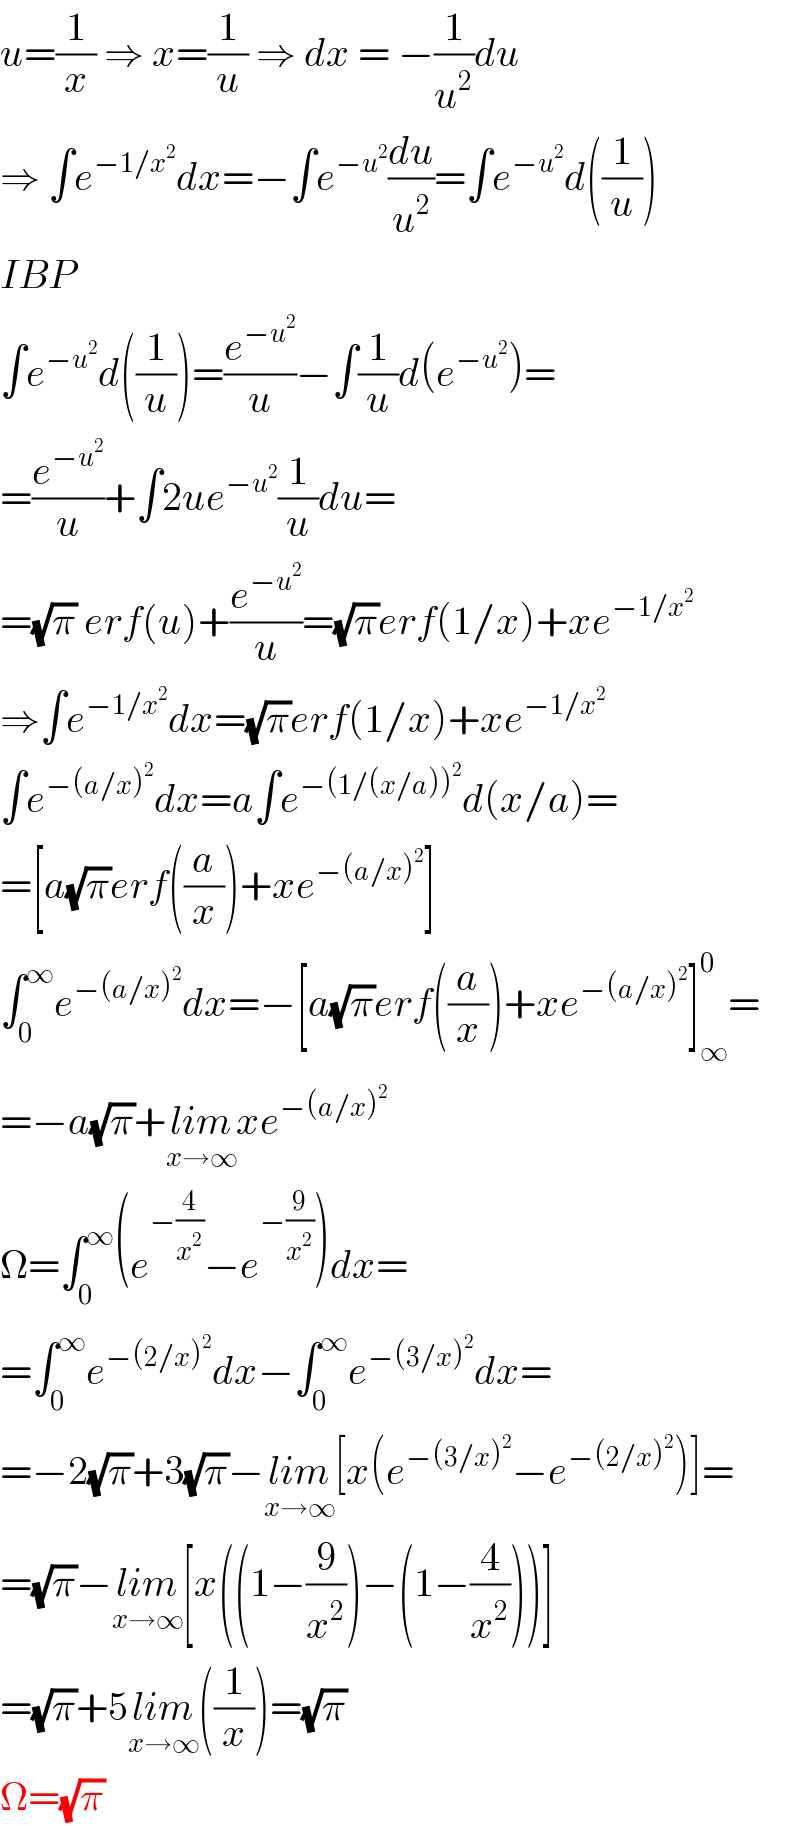 u=(1/x) ⇒ x=(1/u) ⇒ dx = −(1/u^2 )du  ⇒ ∫e^(−1/x^2 ) dx=−∫e^(−u^2 ) (du/u^2 )=∫e^(−u^2 ) d((1/u))  IBP  ∫e^(−u^2 ) d((1/u))=(e^(−u^2 ) /u)−∫(1/u)d(e^(−u^2 ) )=  =(e^(−u^2 ) /u)+∫2ue^(−u^2 ) (1/u)du=  =(√π) erf(u)+(e^(−u^2 ) /u)=(√π)erf(1/x)+xe^(−1/x^2 )   ⇒∫e^(−1/x^2 ) dx=(√π)erf(1/x)+xe^(−1/x^2 )   ∫e^(−(a/x)^2 ) dx=a∫e^(−(1/(x/a))^2 ) d(x/a)=  =[a(√π)erf((a/x))+xe^(−(a/x)^2 ) ]  ∫_0 ^∞ e^(−(a/x)^2 ) dx=−[a(√π)erf((a/x))+xe^(−(a/x)^2 ) ]_∞ ^0 =  =−a(√π)+lim_(x→∞) xe^(−(a/x)^2 )   Ω=∫_0 ^∞ (e^(−(4/x^2 )) −e^(−(9/x^2 )) )dx=  =∫_0 ^∞ e^(−(2/x)^2 ) dx−∫_0 ^∞ e^(−(3/x)^2 ) dx=  =−2(√π)+3(√π)−lim_(x→∞) [x(e^(−(3/x)^2 ) −e^(−(2/x)^2 ) )]=  =(√π)−lim_(x→∞) [x((1−(9/x^2 ))−(1−(4/x^2 )))]  =(√π)+5lim_(x→∞) ((1/x))=(√π)  Ω=(√π)  